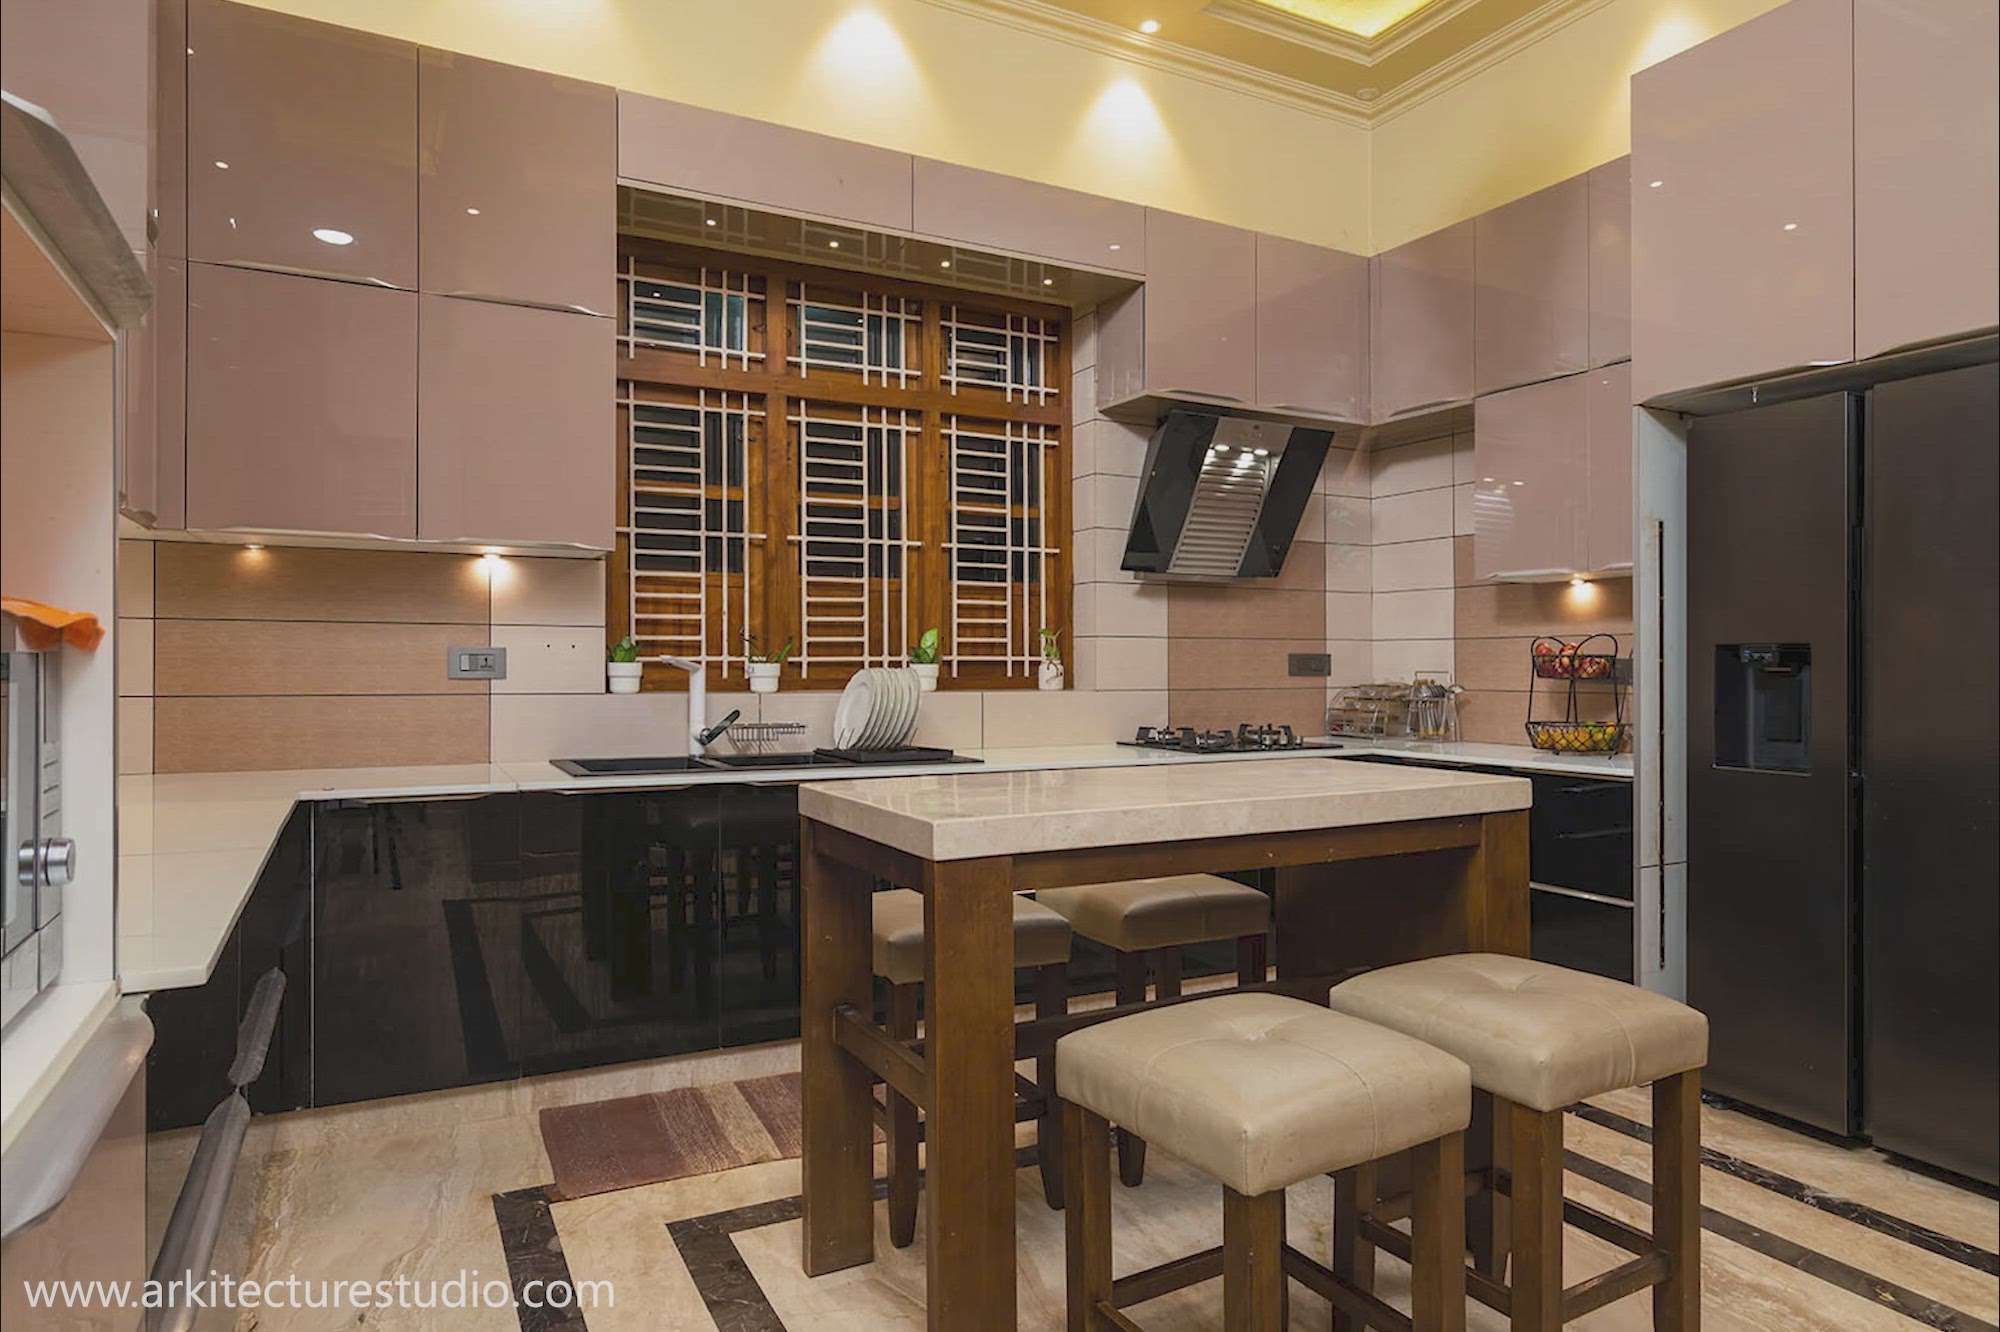 Kitchen interior ideas

www.arkitecturestudio.com #KitchenIdeas  #LargeKitchen  #KitchenCabinet  #KitchenCeilingDesign  #KitchenInterior 
 #KitchenDesigns 
 #kitchenphotis
 #kitchenplan